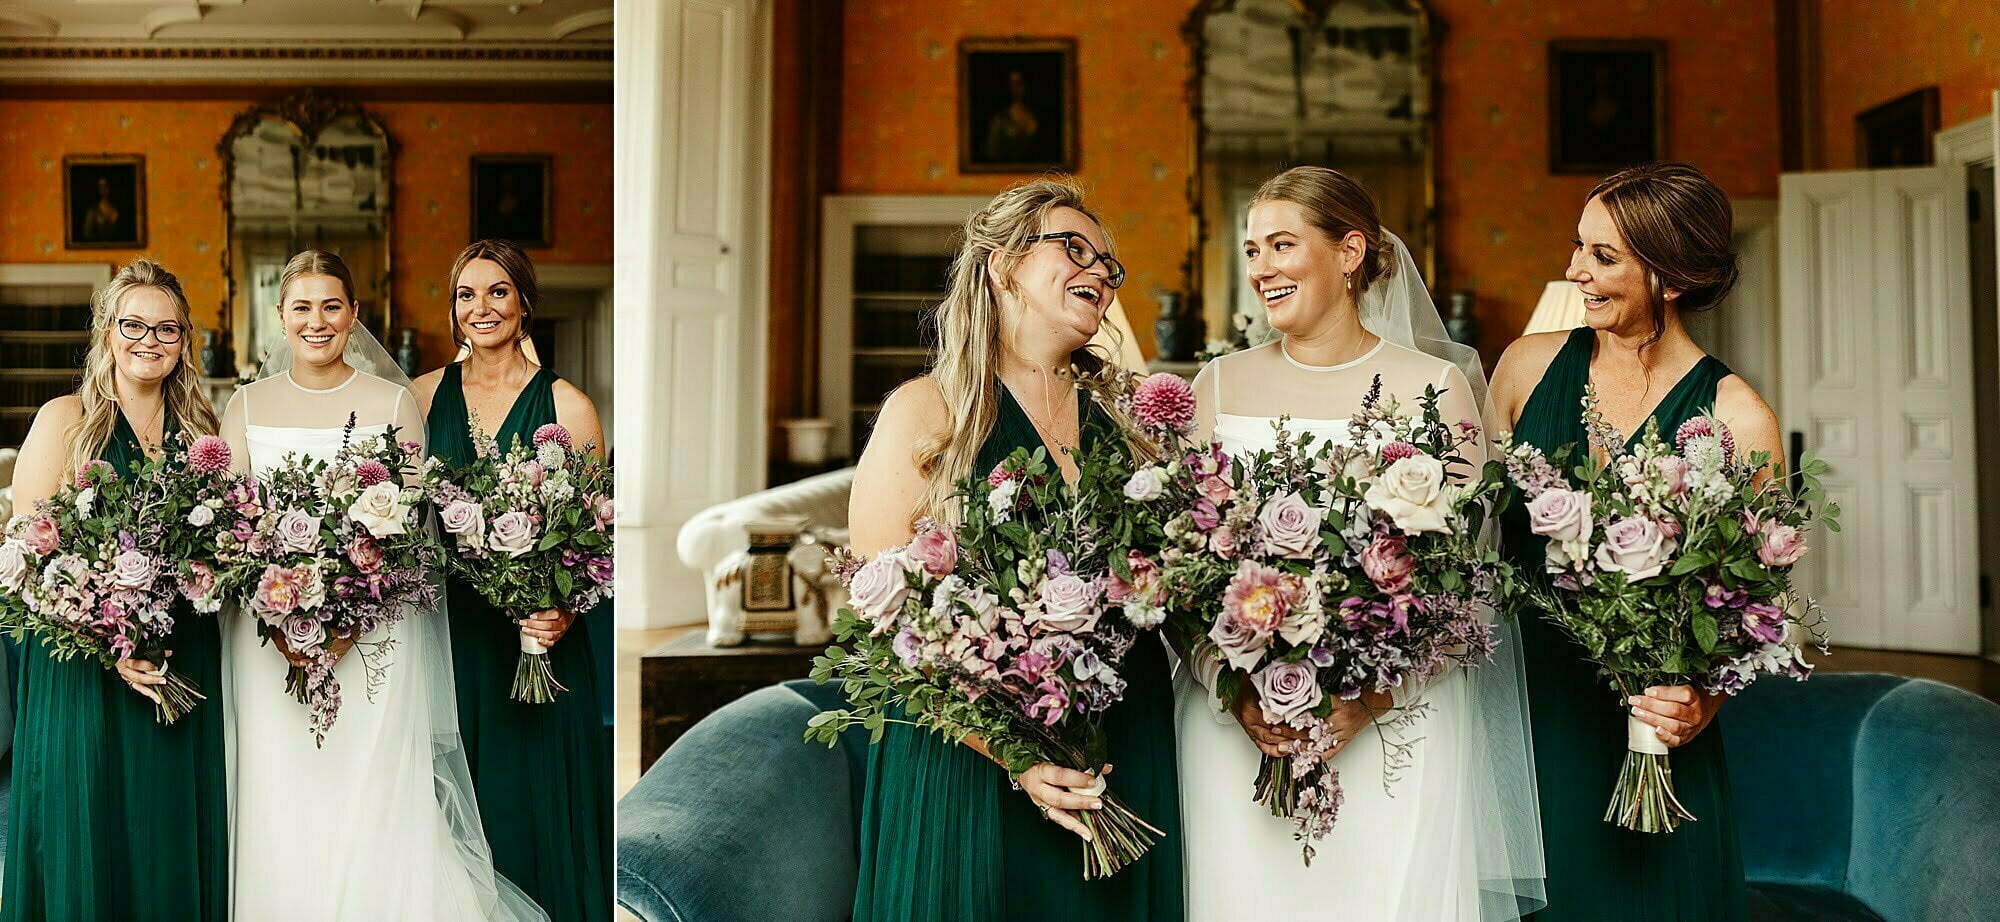 bridal portraits wardhill castle kim dalglish flowers florals bouquet photography photographs birdesmaids dresses green dress